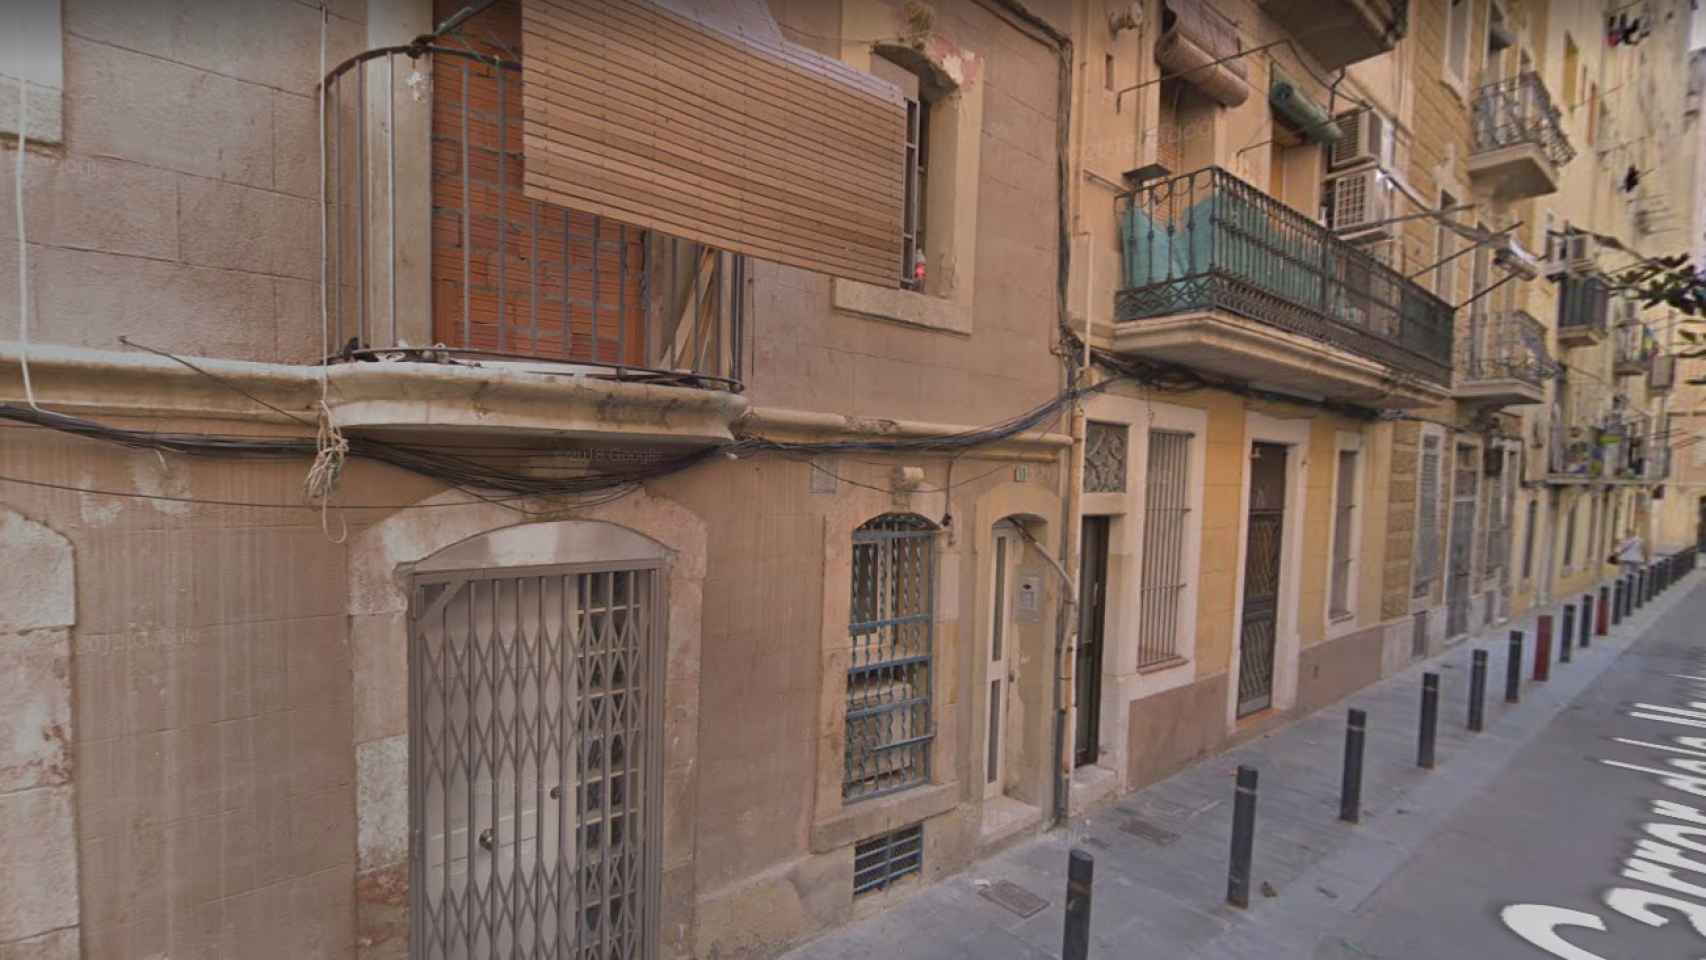 La calle de Magatzems, 11, en la Barceloneta, donde el hombre maniatado ha escapado de un piso en llamas / GOOGLE MAPS